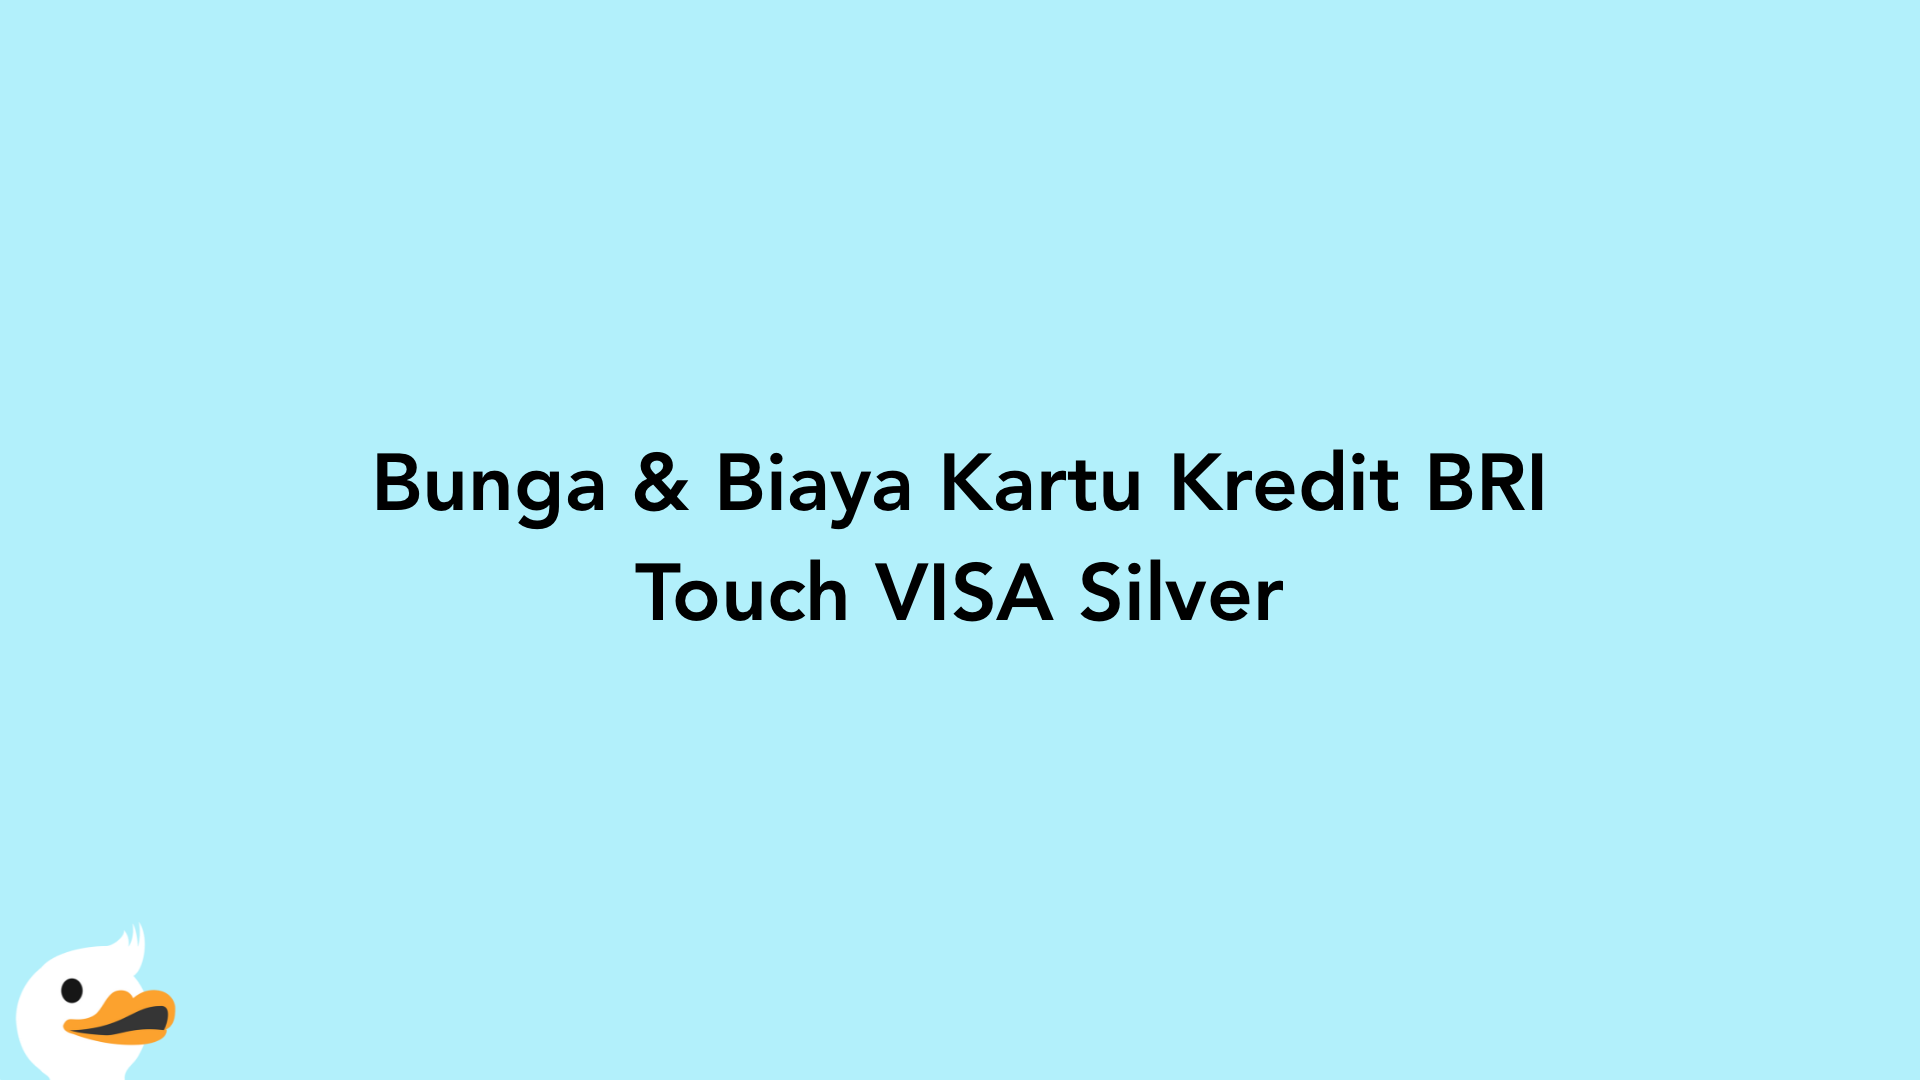 Bunga & Biaya Kartu Kredit BRI Touch VISA Silver